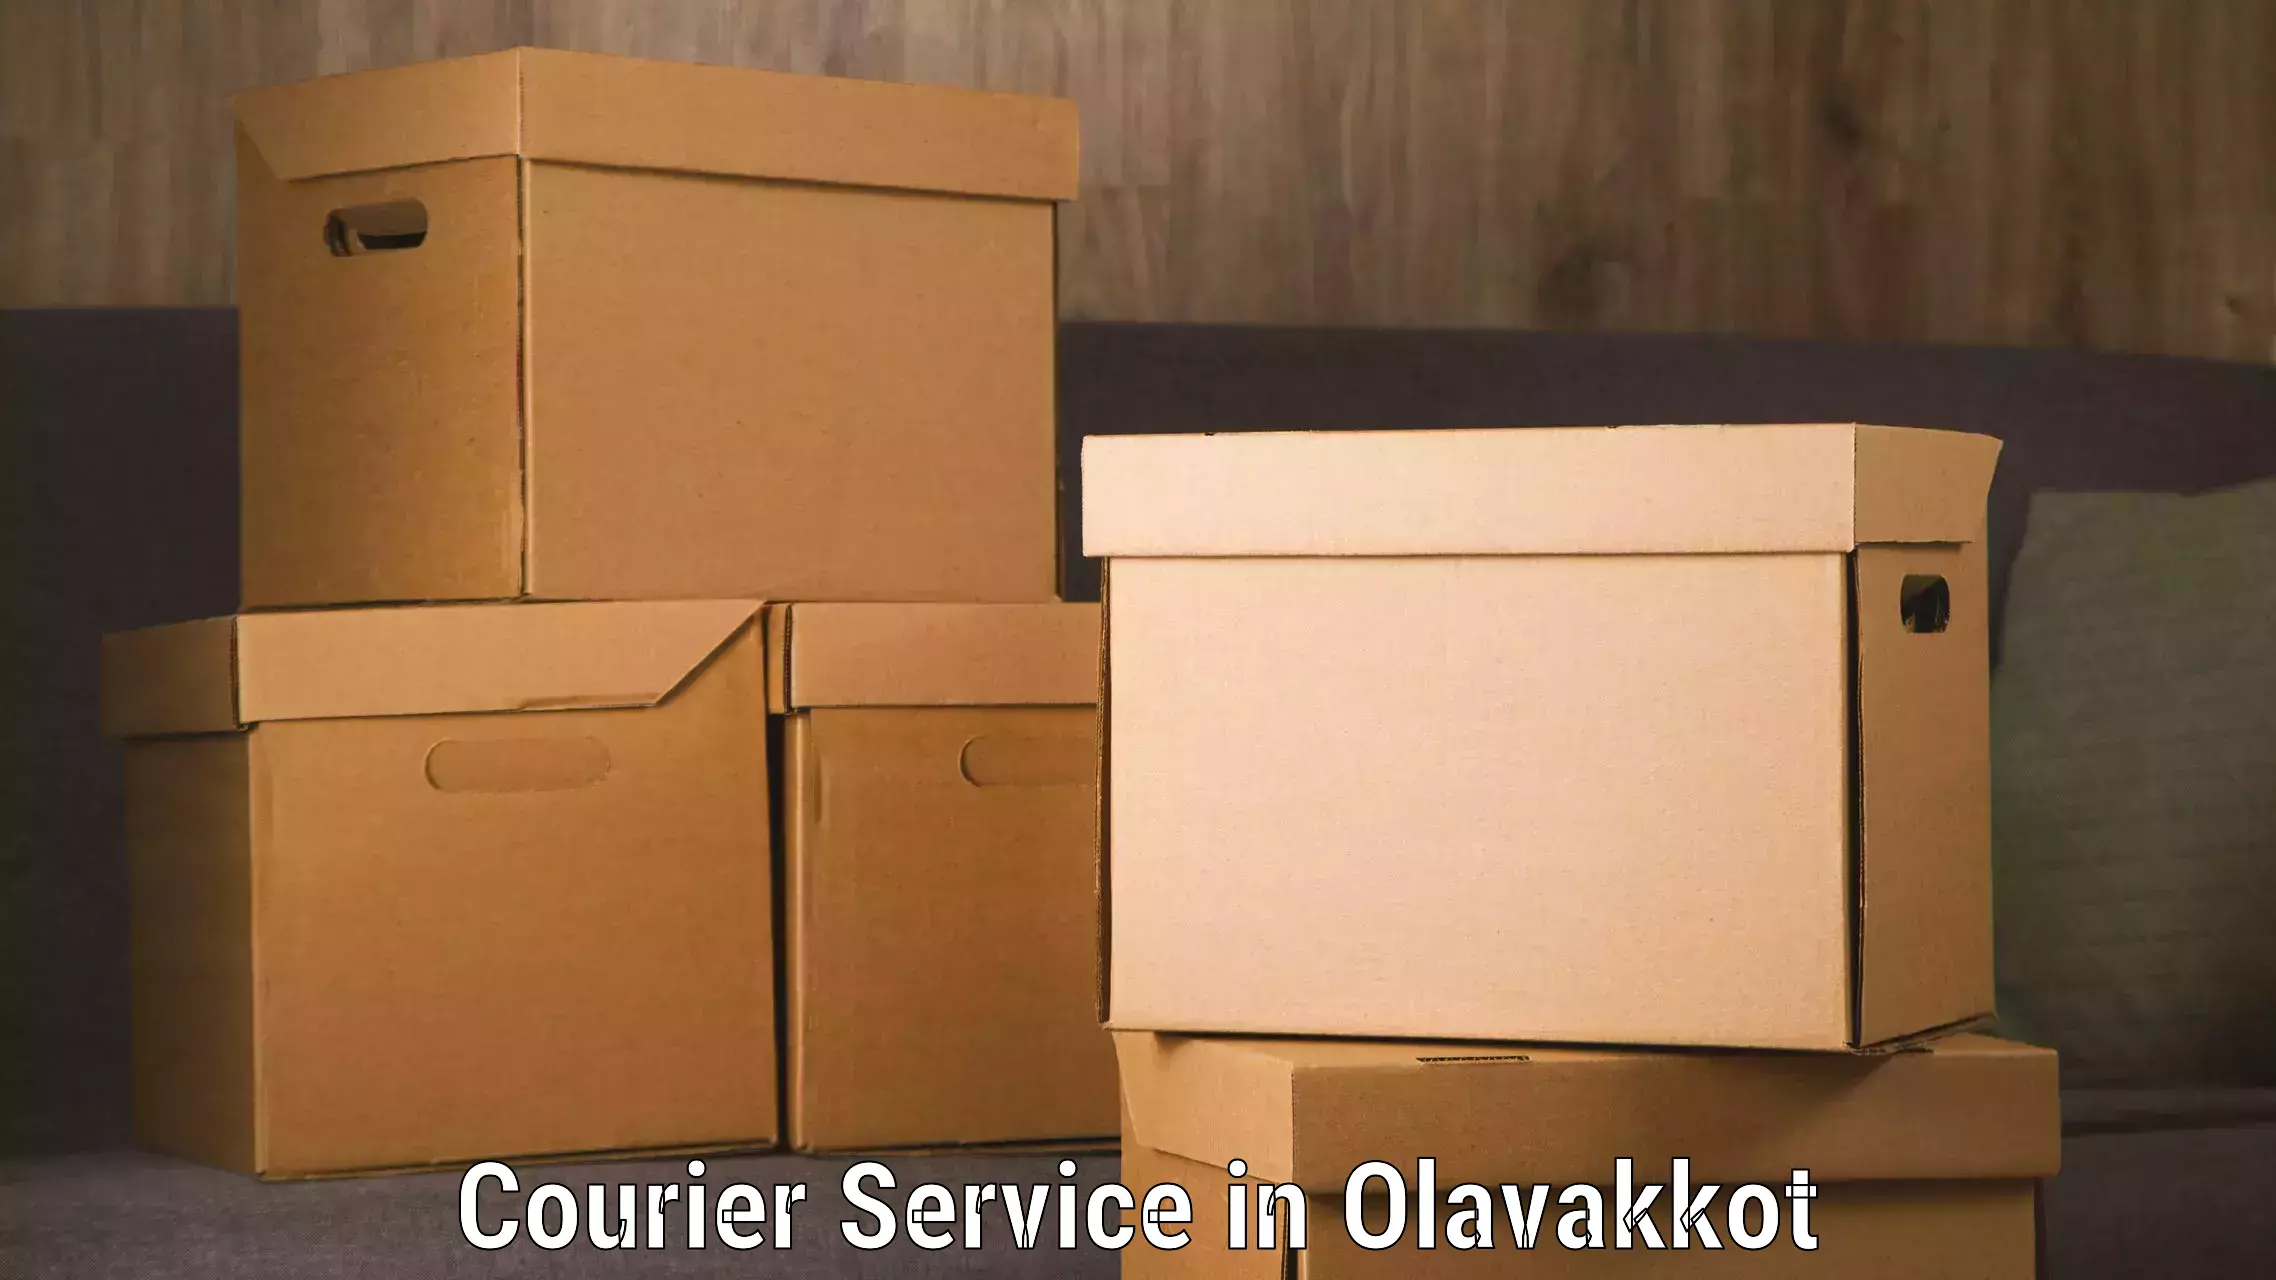 Secure packaging in Olavakkot